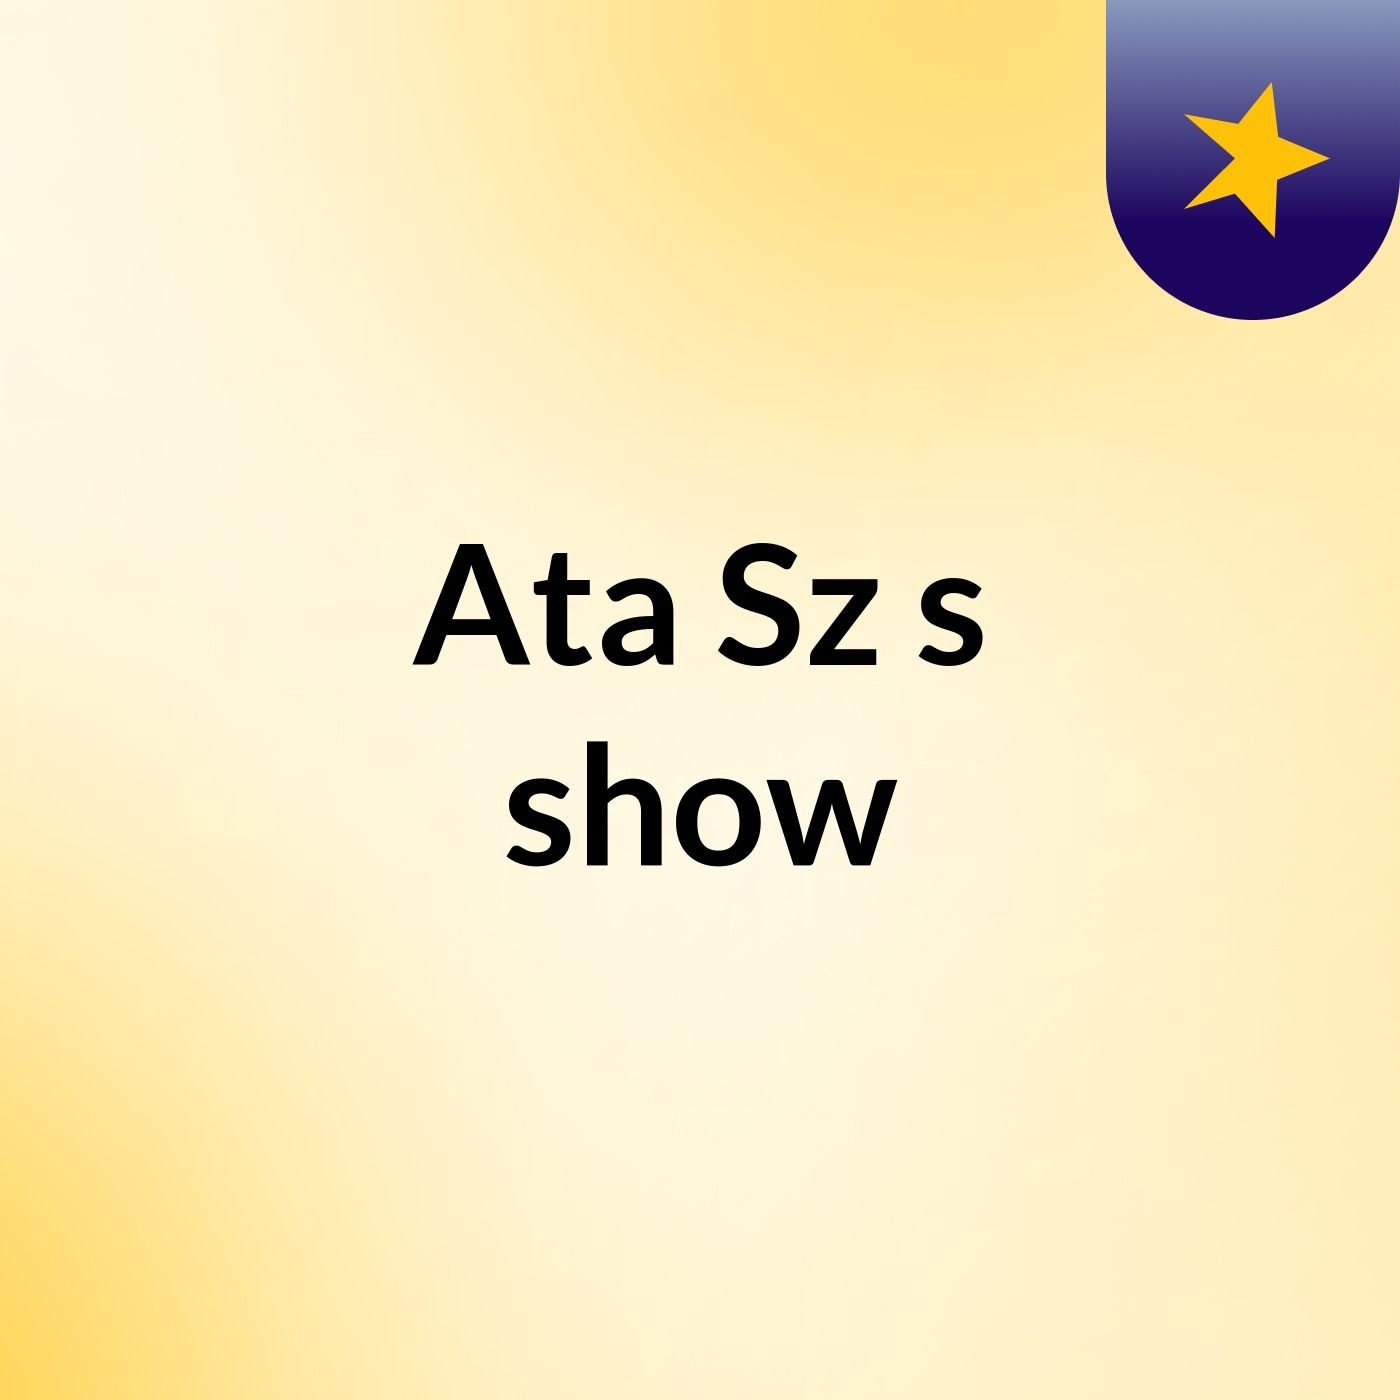 Ata Sz's show